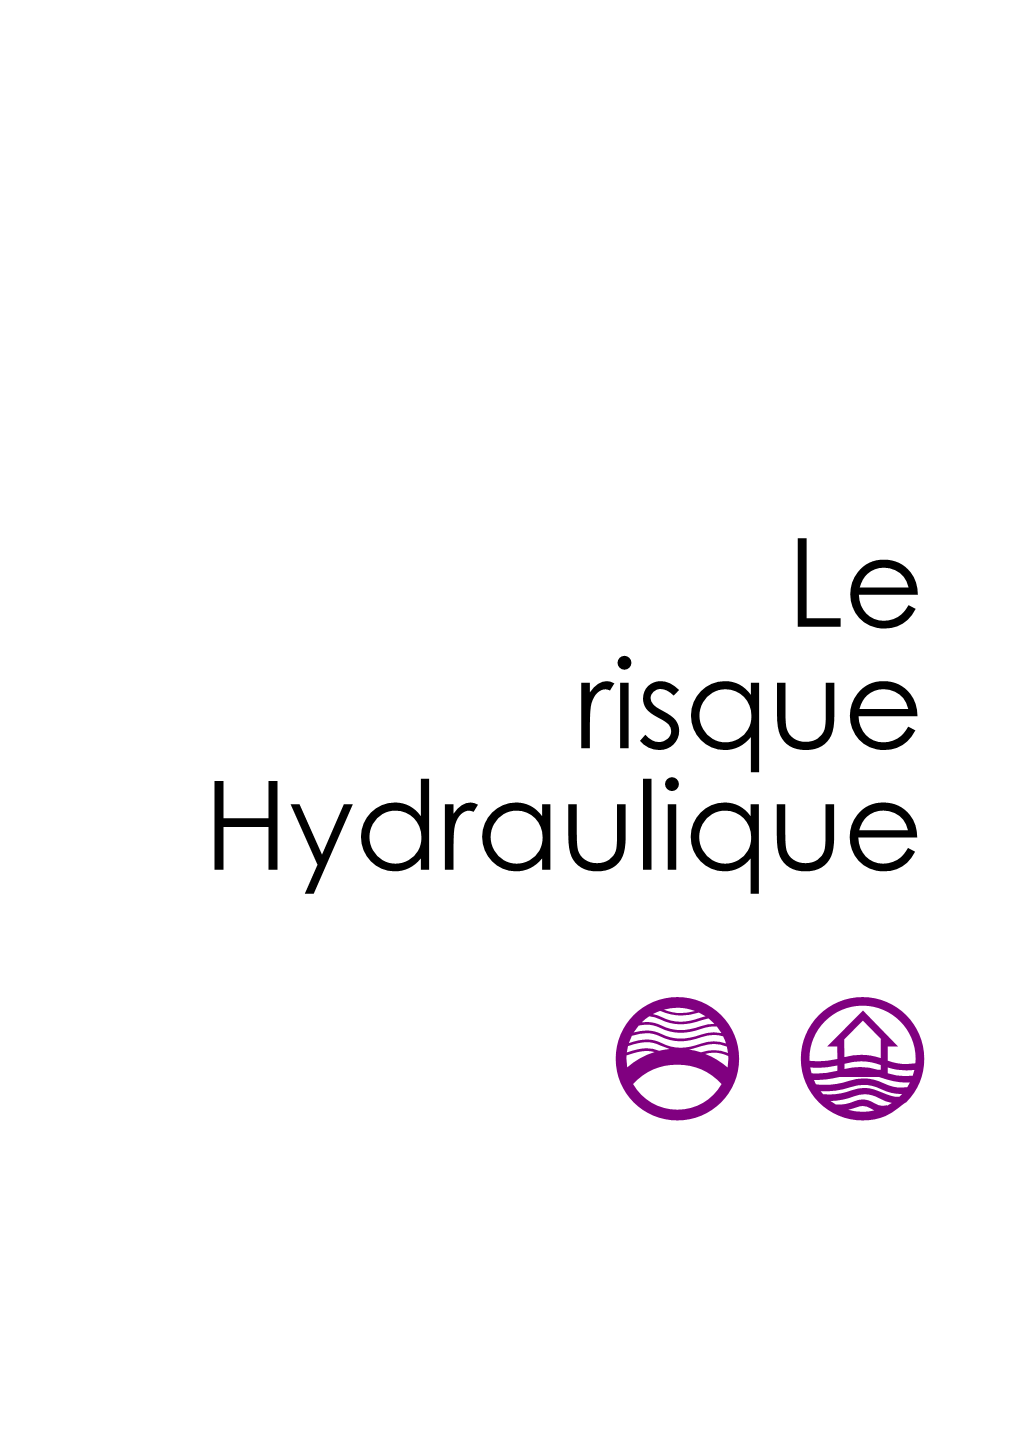 Le Risque Hydraulique E C Préfecture De La Côte D'or - DDRM 2012